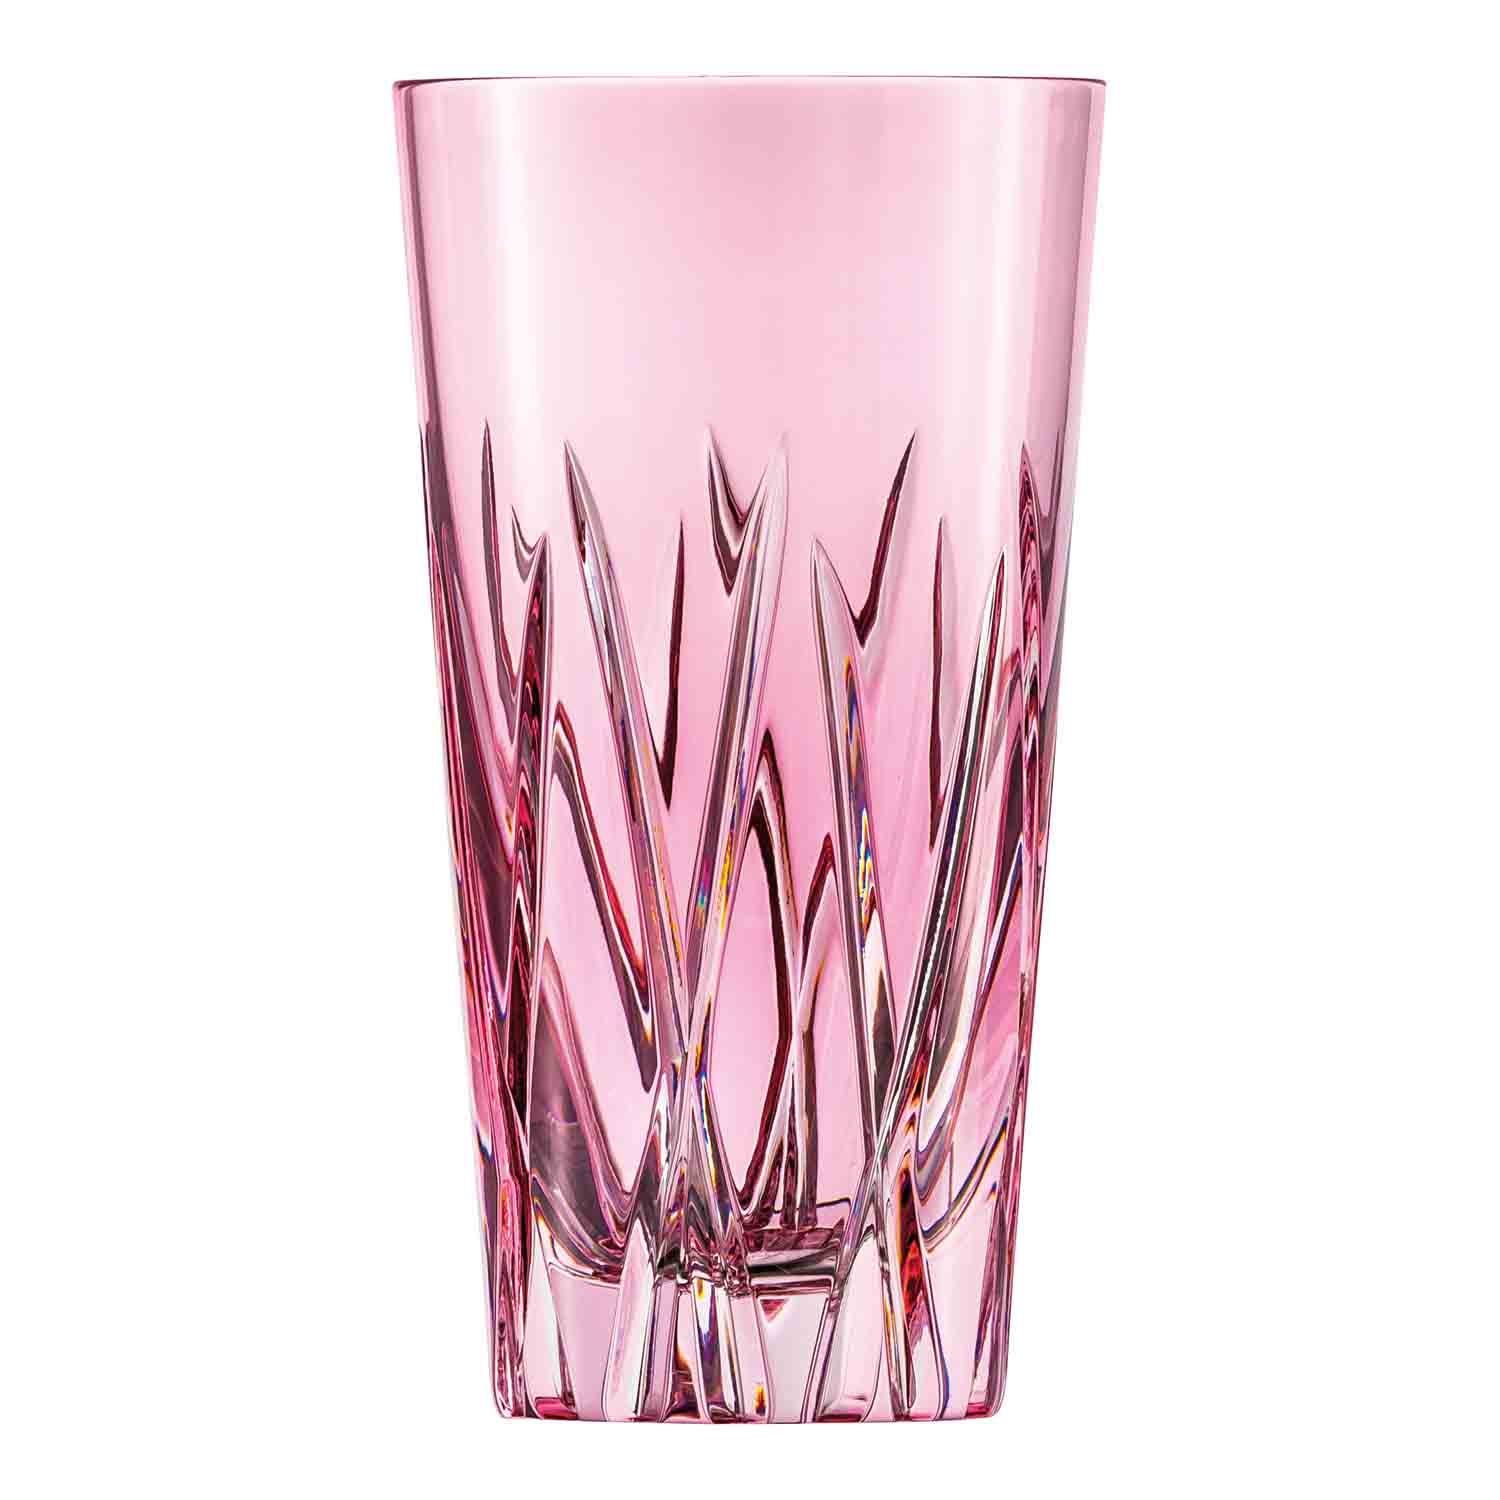 Longdrinkglas Kristallglas London rosalin (14 cm)